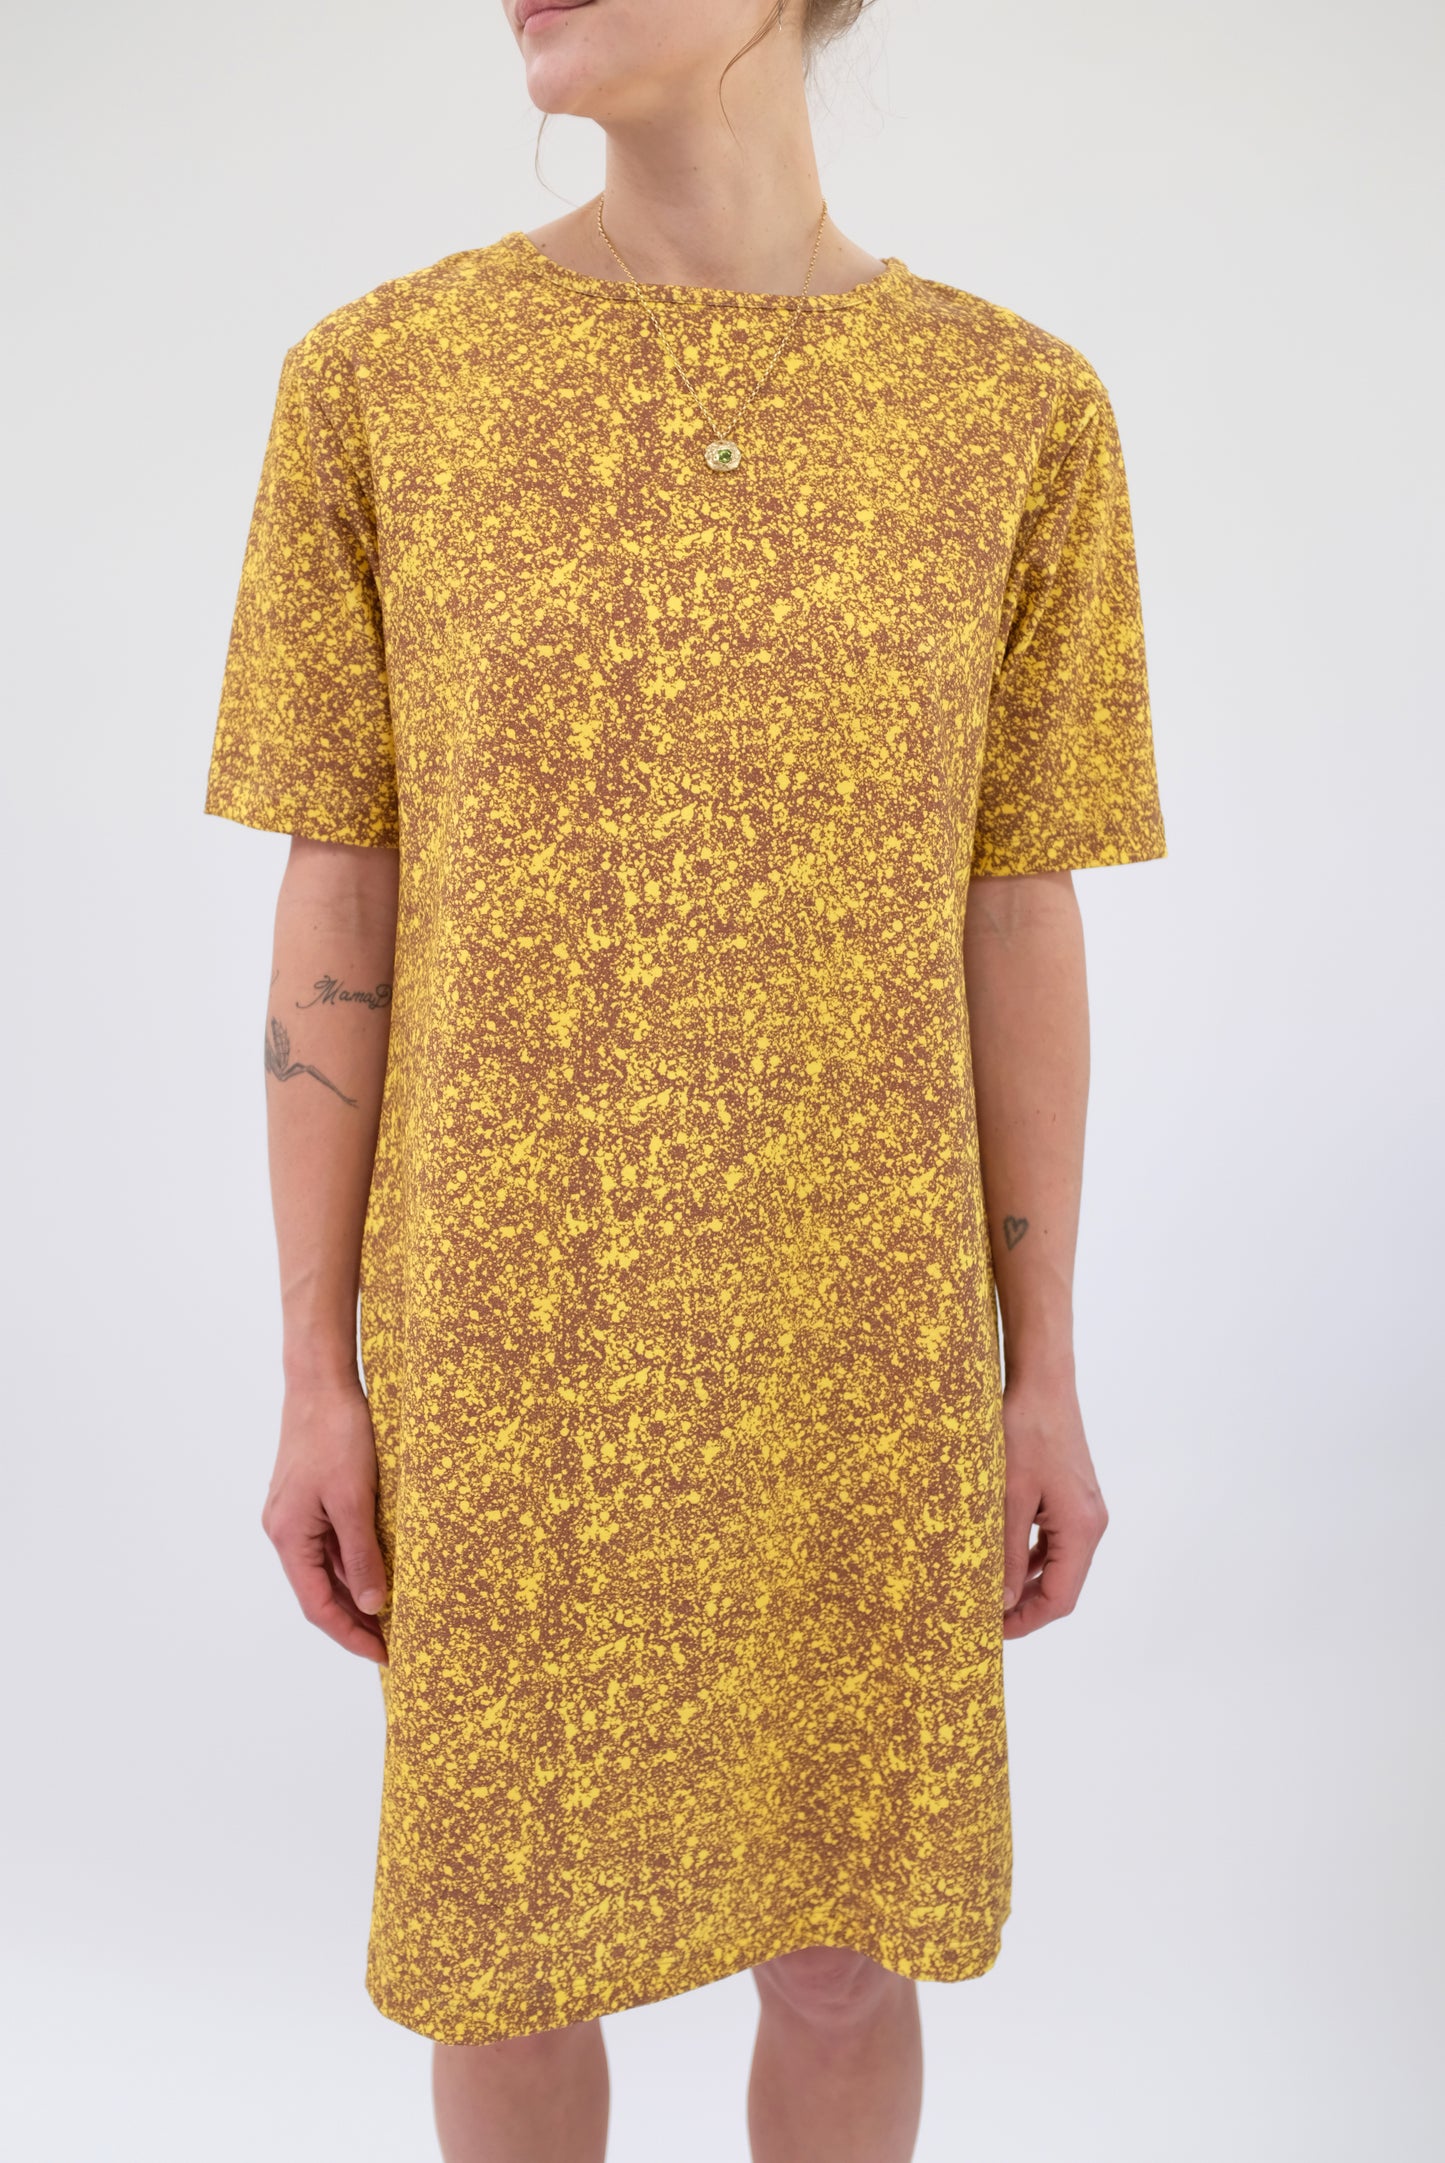 Beklina T Shirt Dress Splatter Lemon